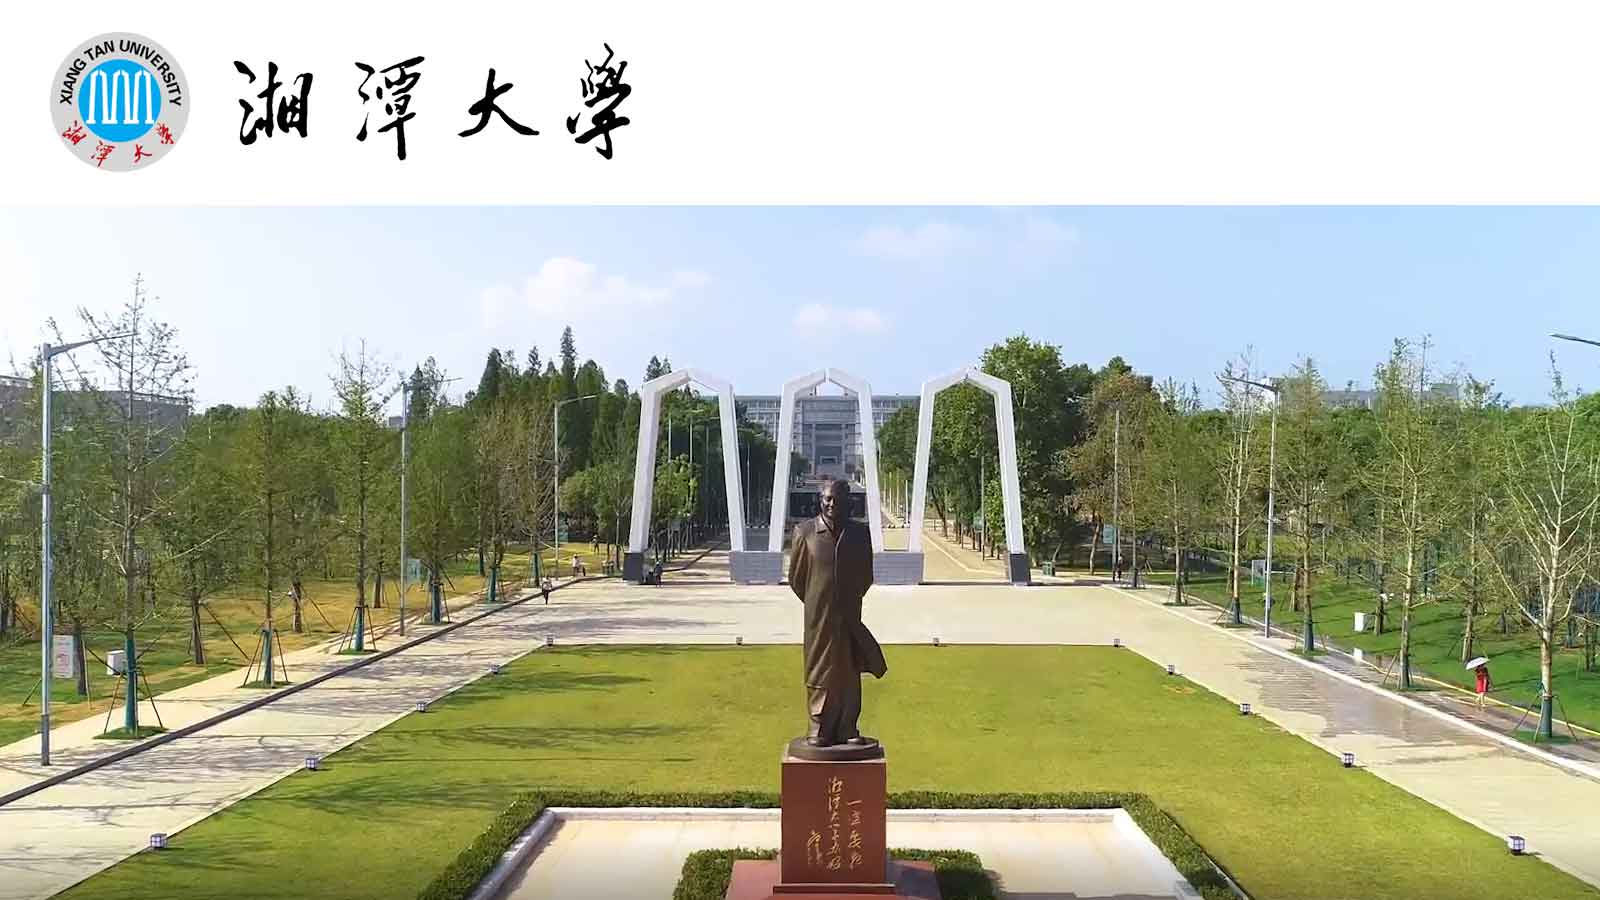 2022年湘潭大学国际中文教师奖学金